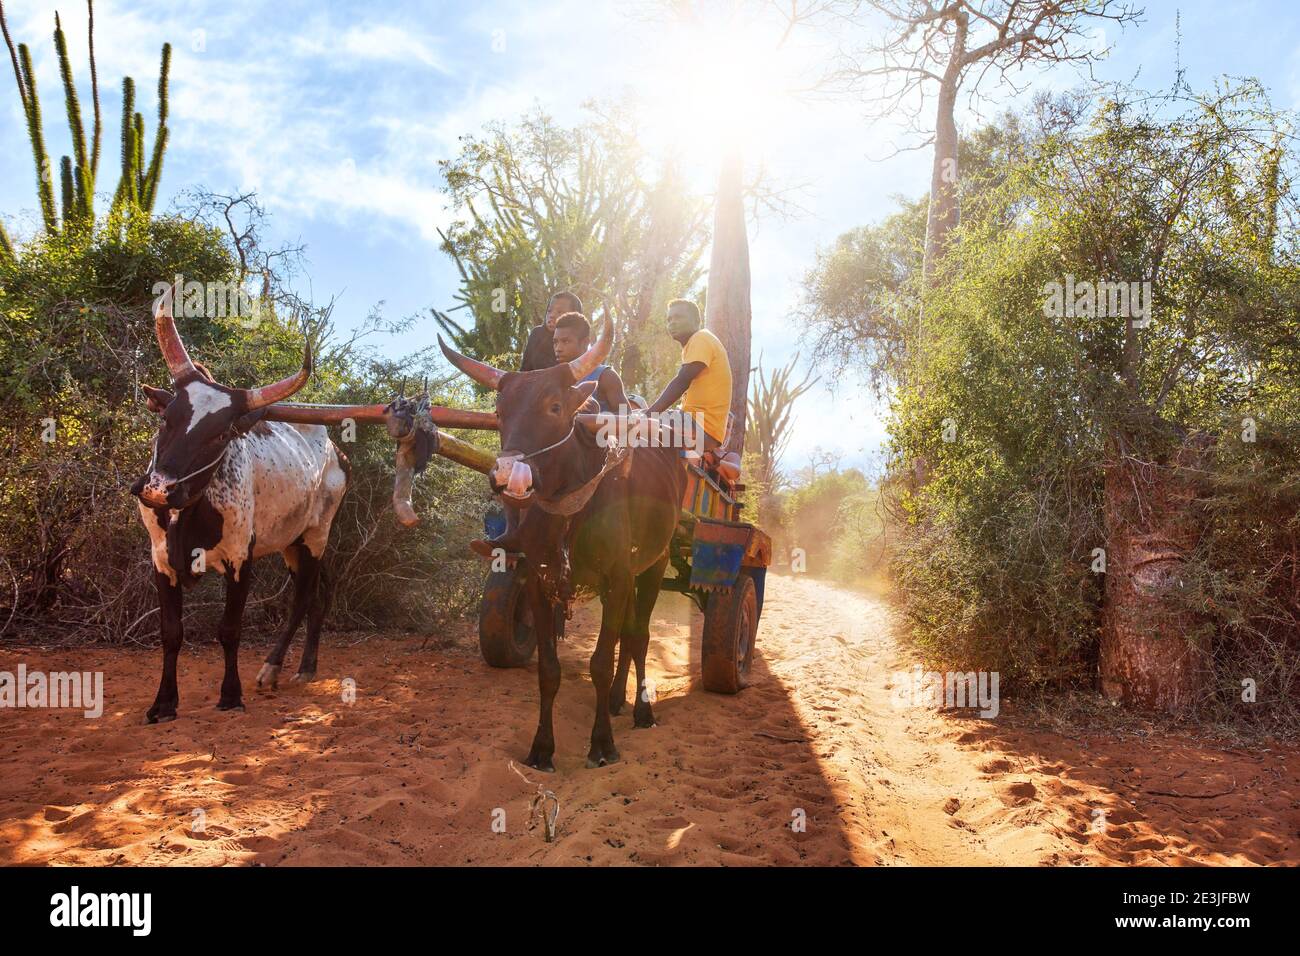 Ifaty, Madagascar - 01 mai 2019 : chariot en bois tiré par des bêtes de zébu avec des hommes malgaches inconnus allant près de baobab, des poulpes, et de petits buissons, de la stro Banque D'Images